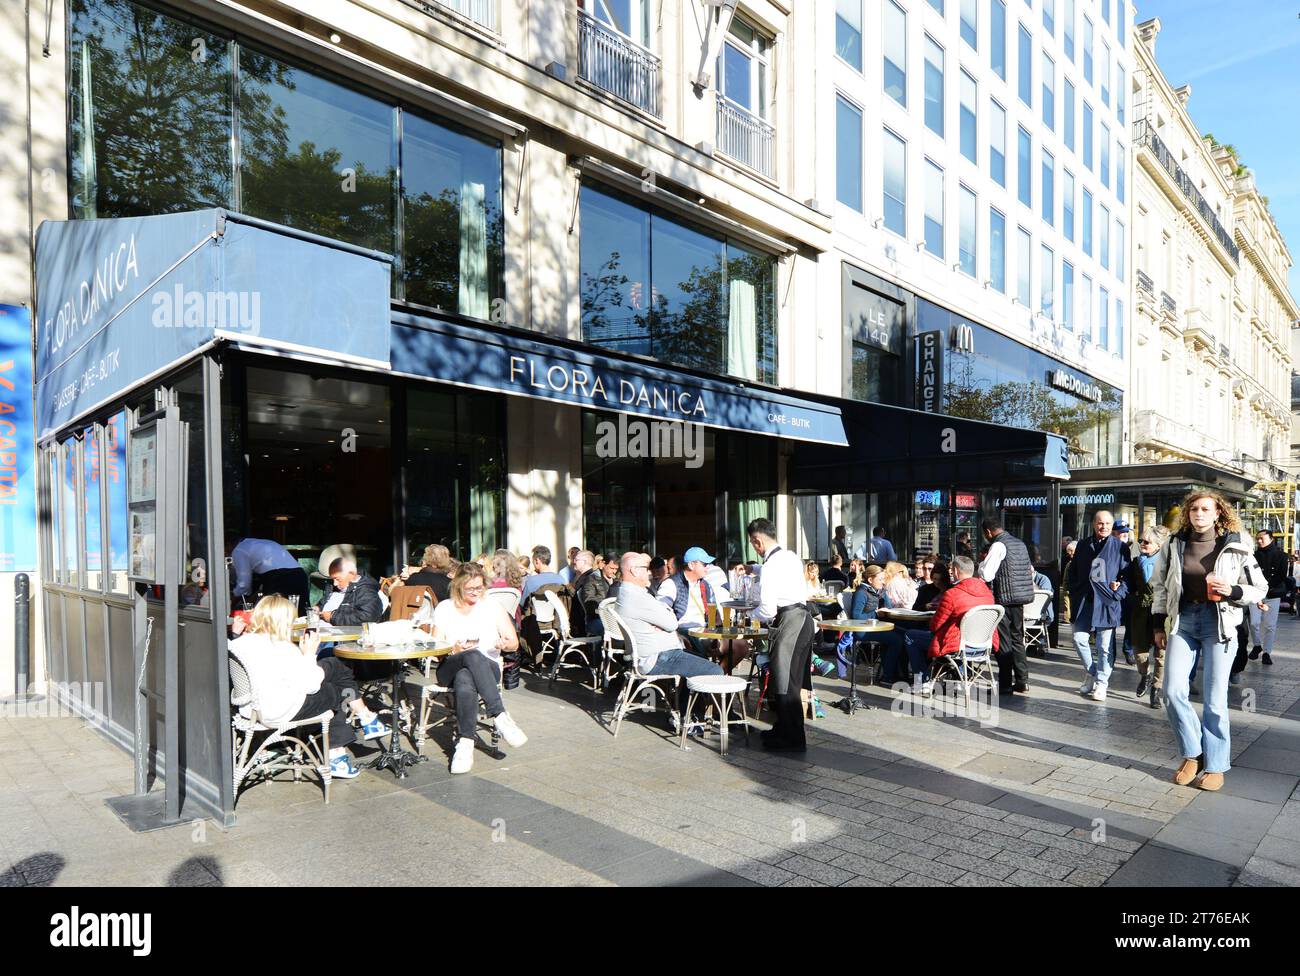 The vibrant Flora Danica café on Avenue des Champs-Élysées in the 8th arrondissement of Paris, France. Stock Photo